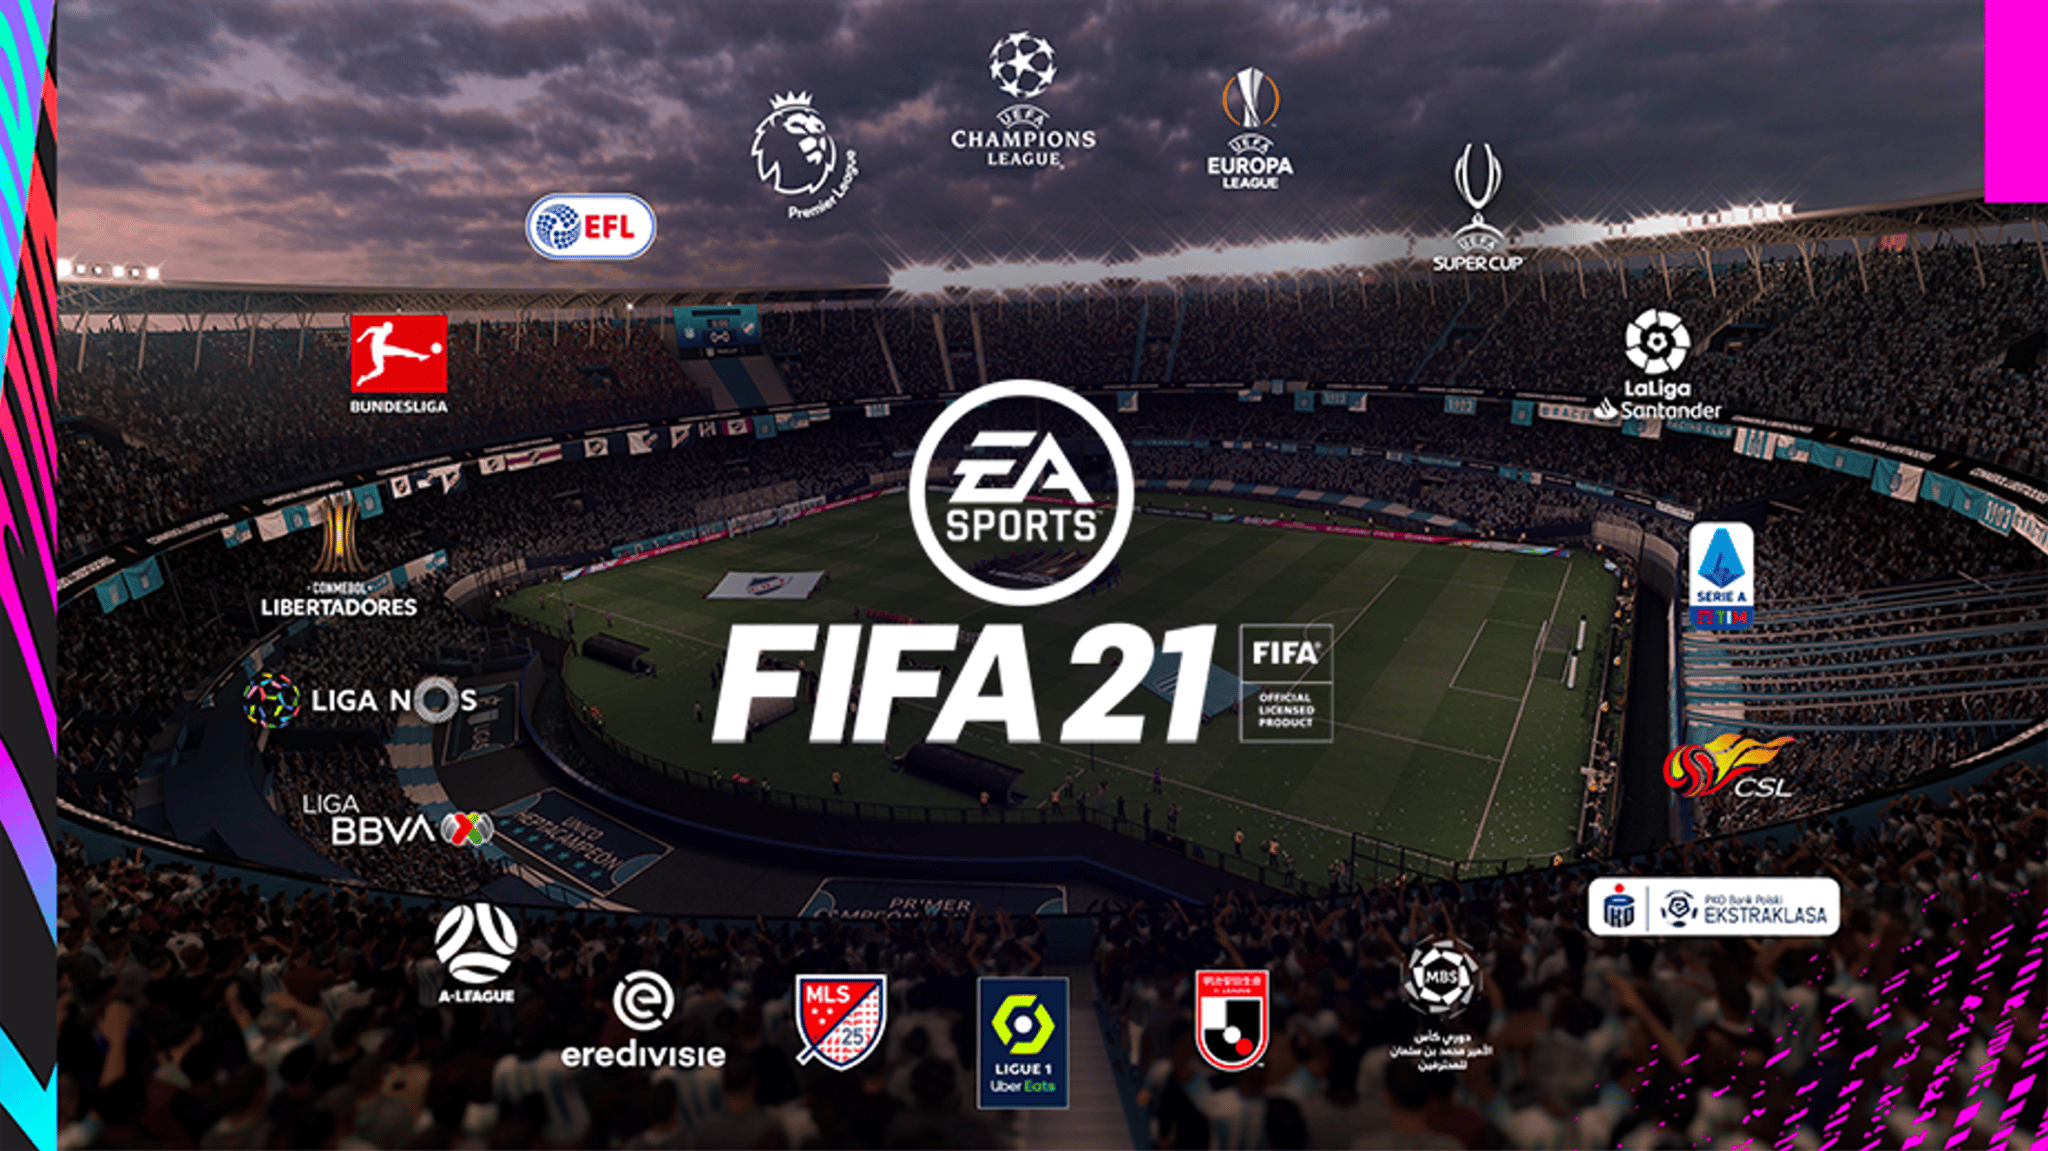 FIFA 21 league logos